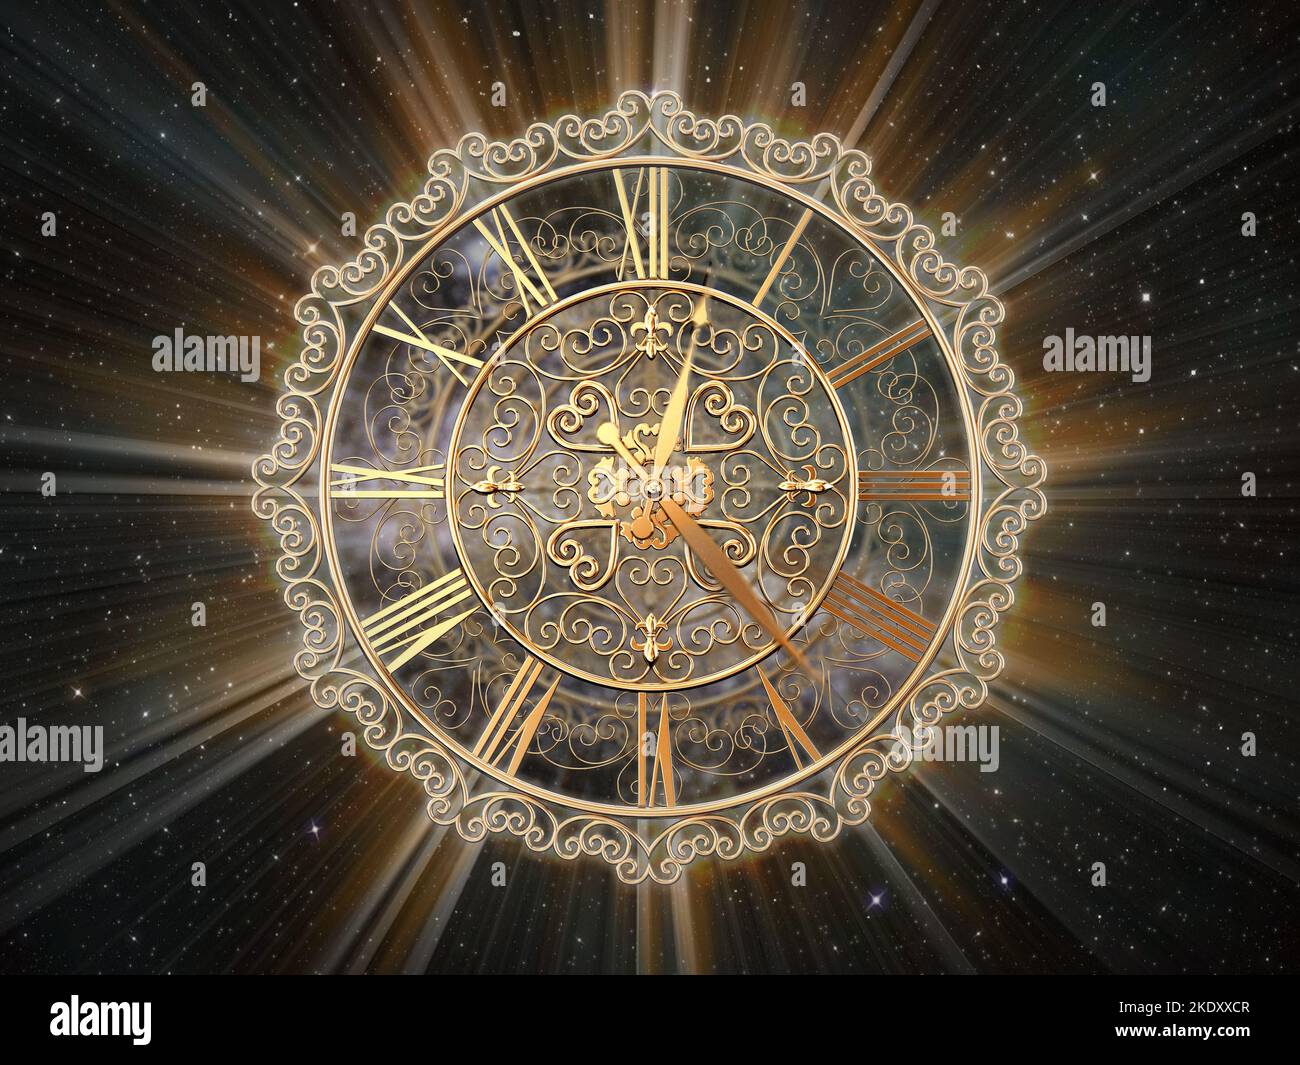 Reloj de oro ornamentado y caras con efectos de luz sobre el fondo del espacio. Concepto Infinity of Time. Ilustración 3D. Foto de stock